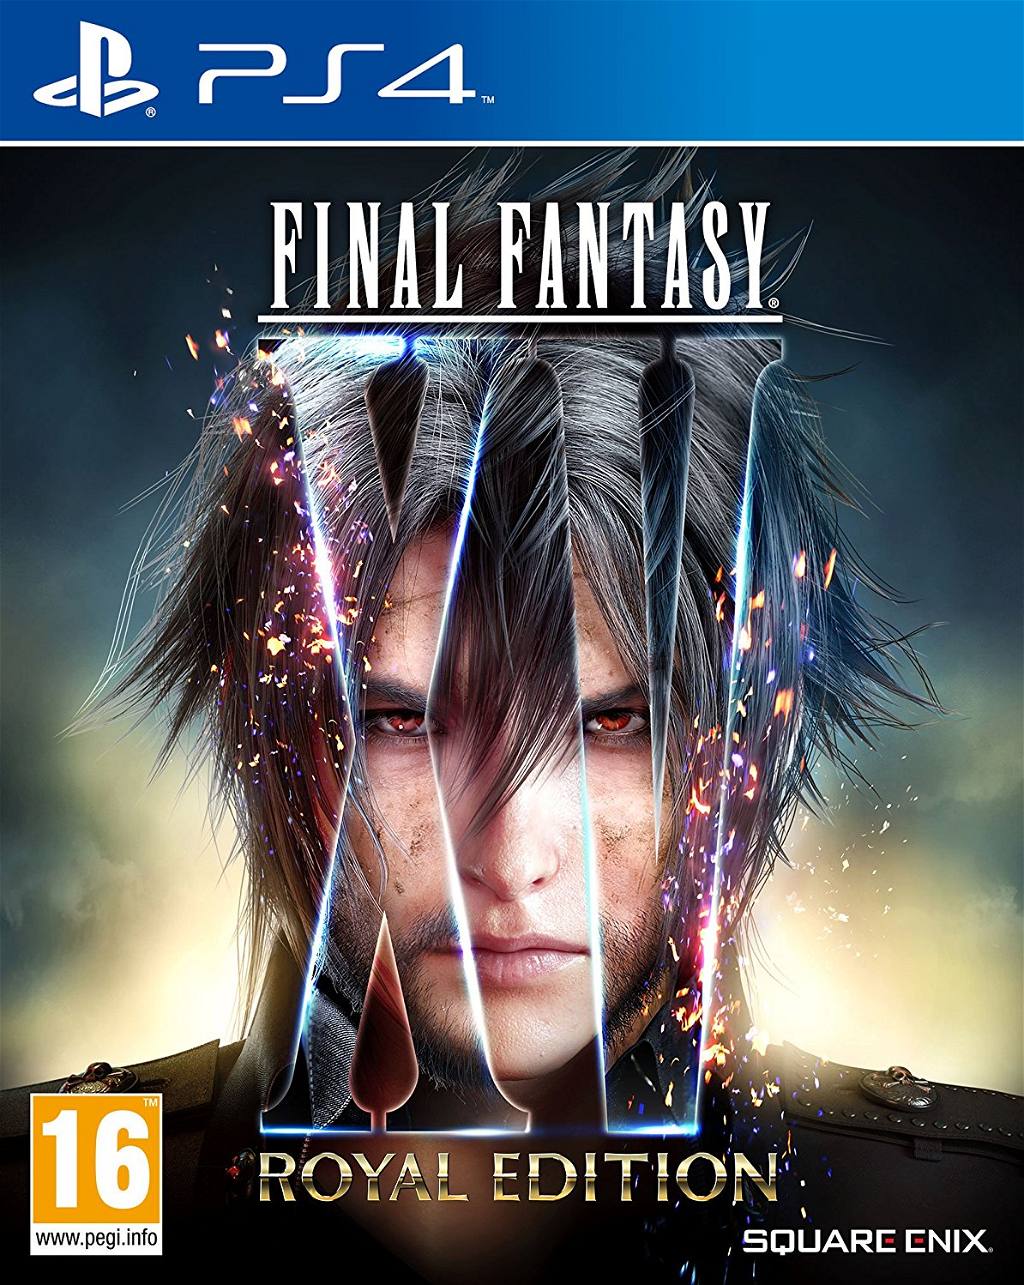 godtgørelse hjem medaljevinder Final Fantasy XV: Royal Edition for PlayStation 4